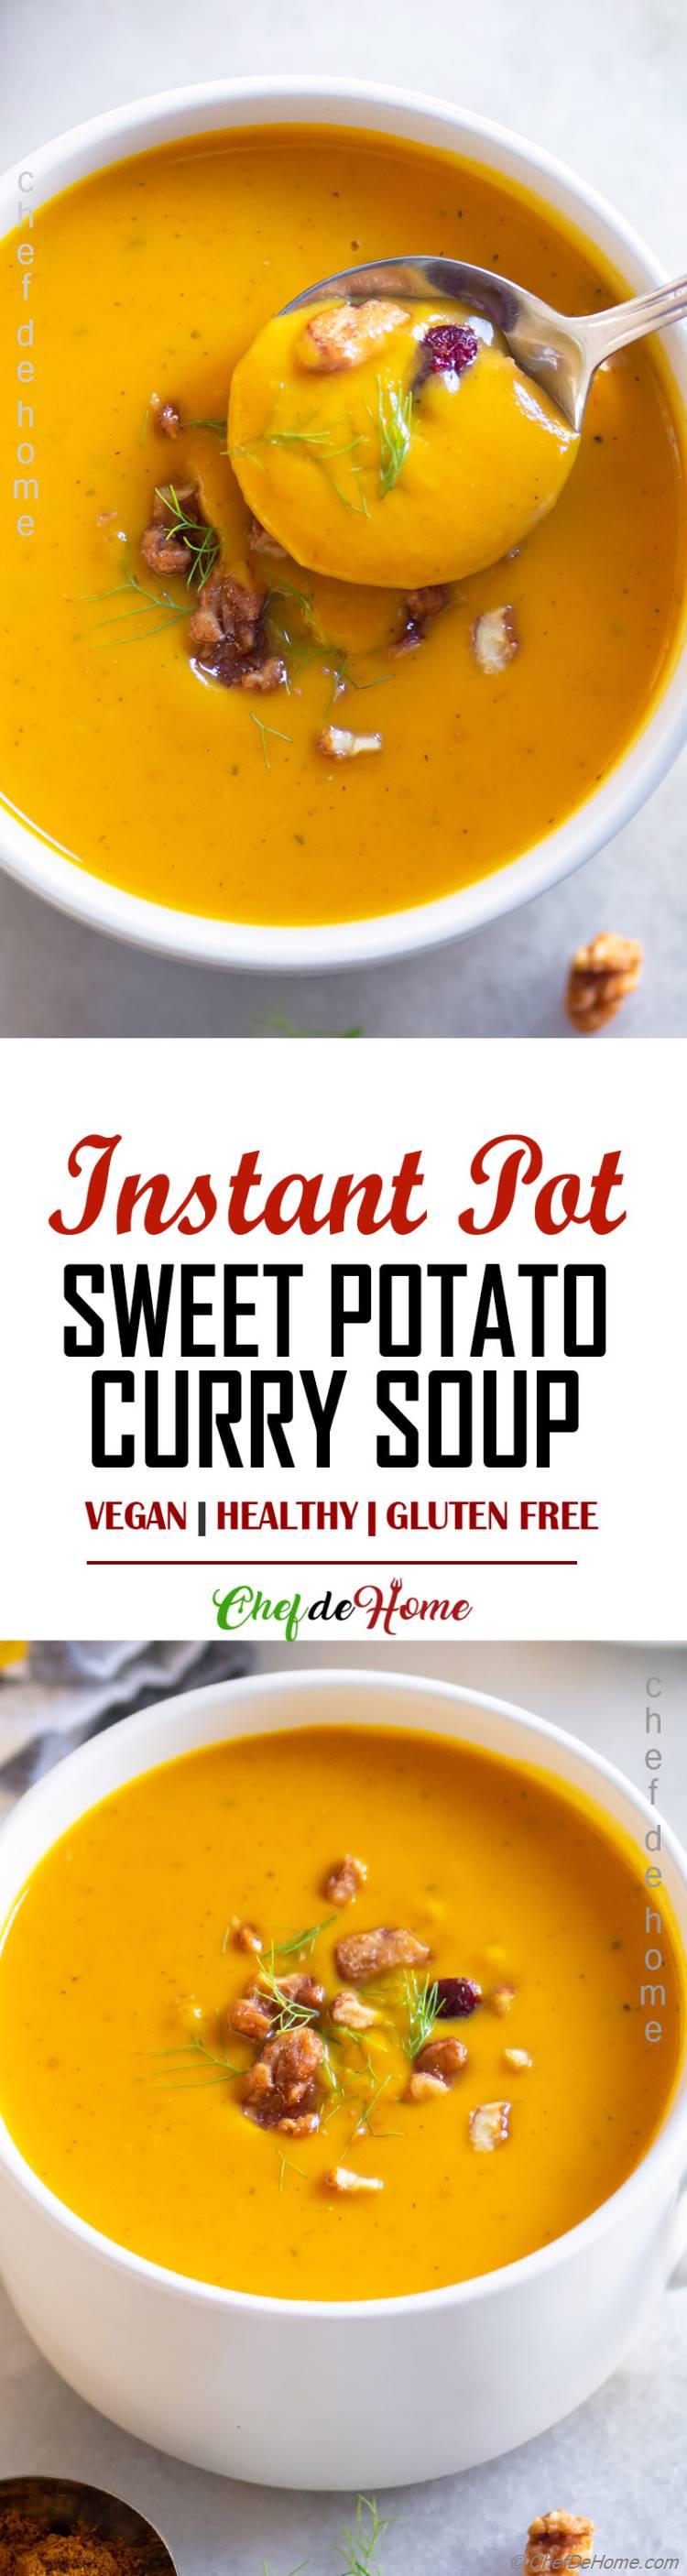 Sweet Potato Curry Soup Recipe